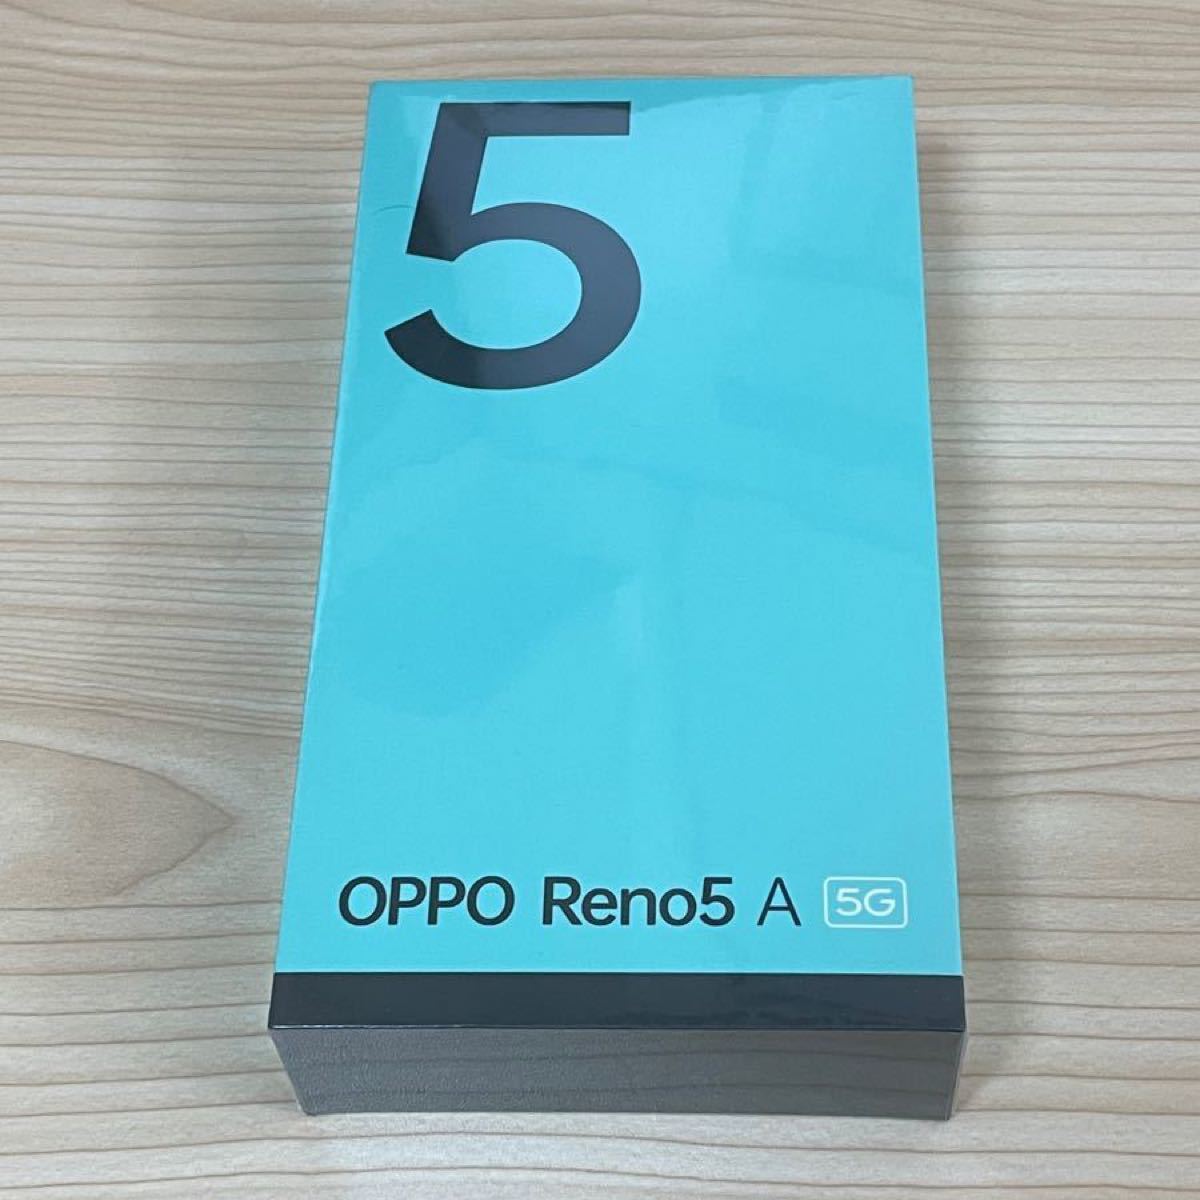 OPPO Reno5 A 5G ワイモバイル版 シルバーブラック 新品未開封